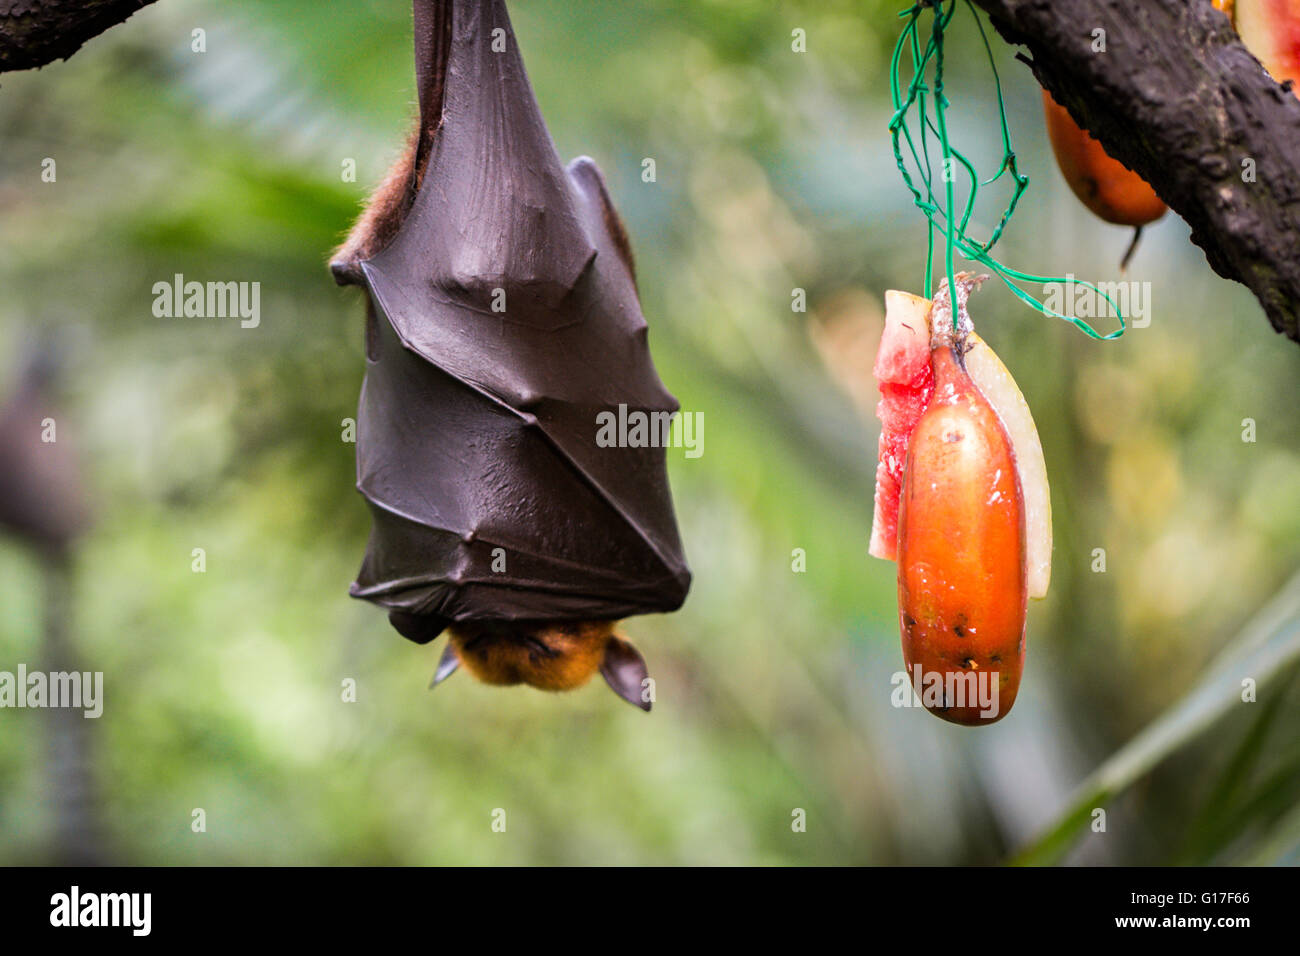 : La malese flying fox bat appesi a un ramo di albero Foto Stock